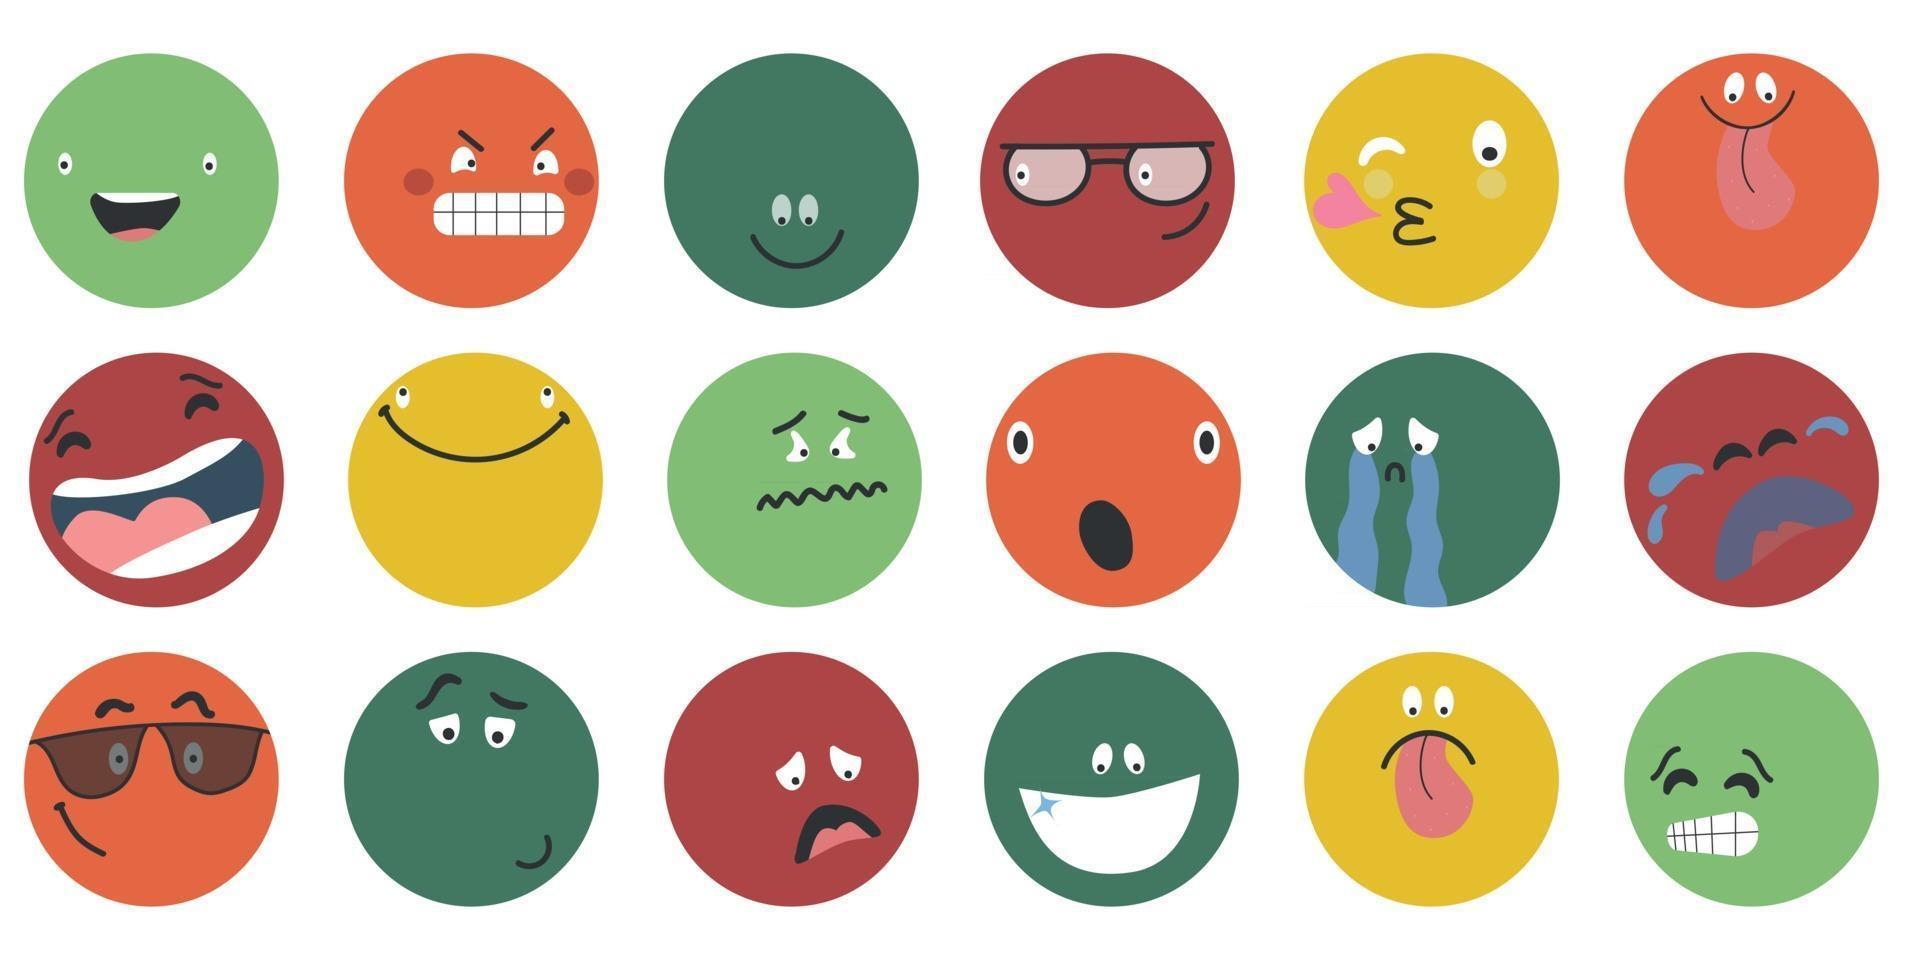 runda abstrakta komiska ansikten med olika känslor olika färgglada karaktärer tecknad stil platt design emoticons set emoji ansikten emoticon leende digital smiley uttryck känslor känslor chatt budbärare tecknad emotes vektor